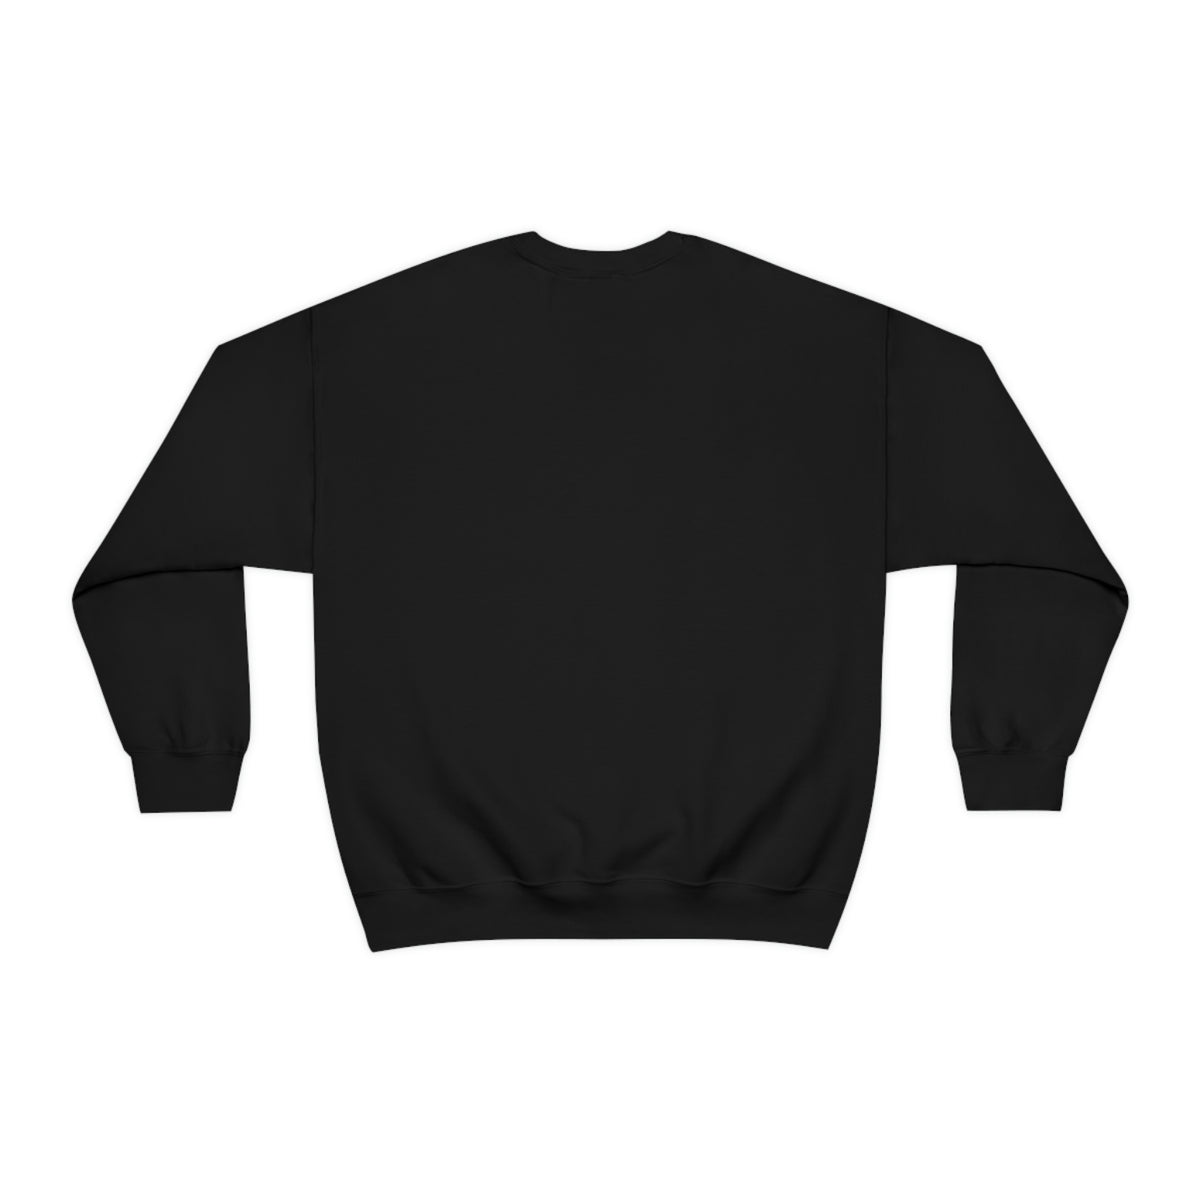 It doesn't Matter - Unisex Sweatshirt